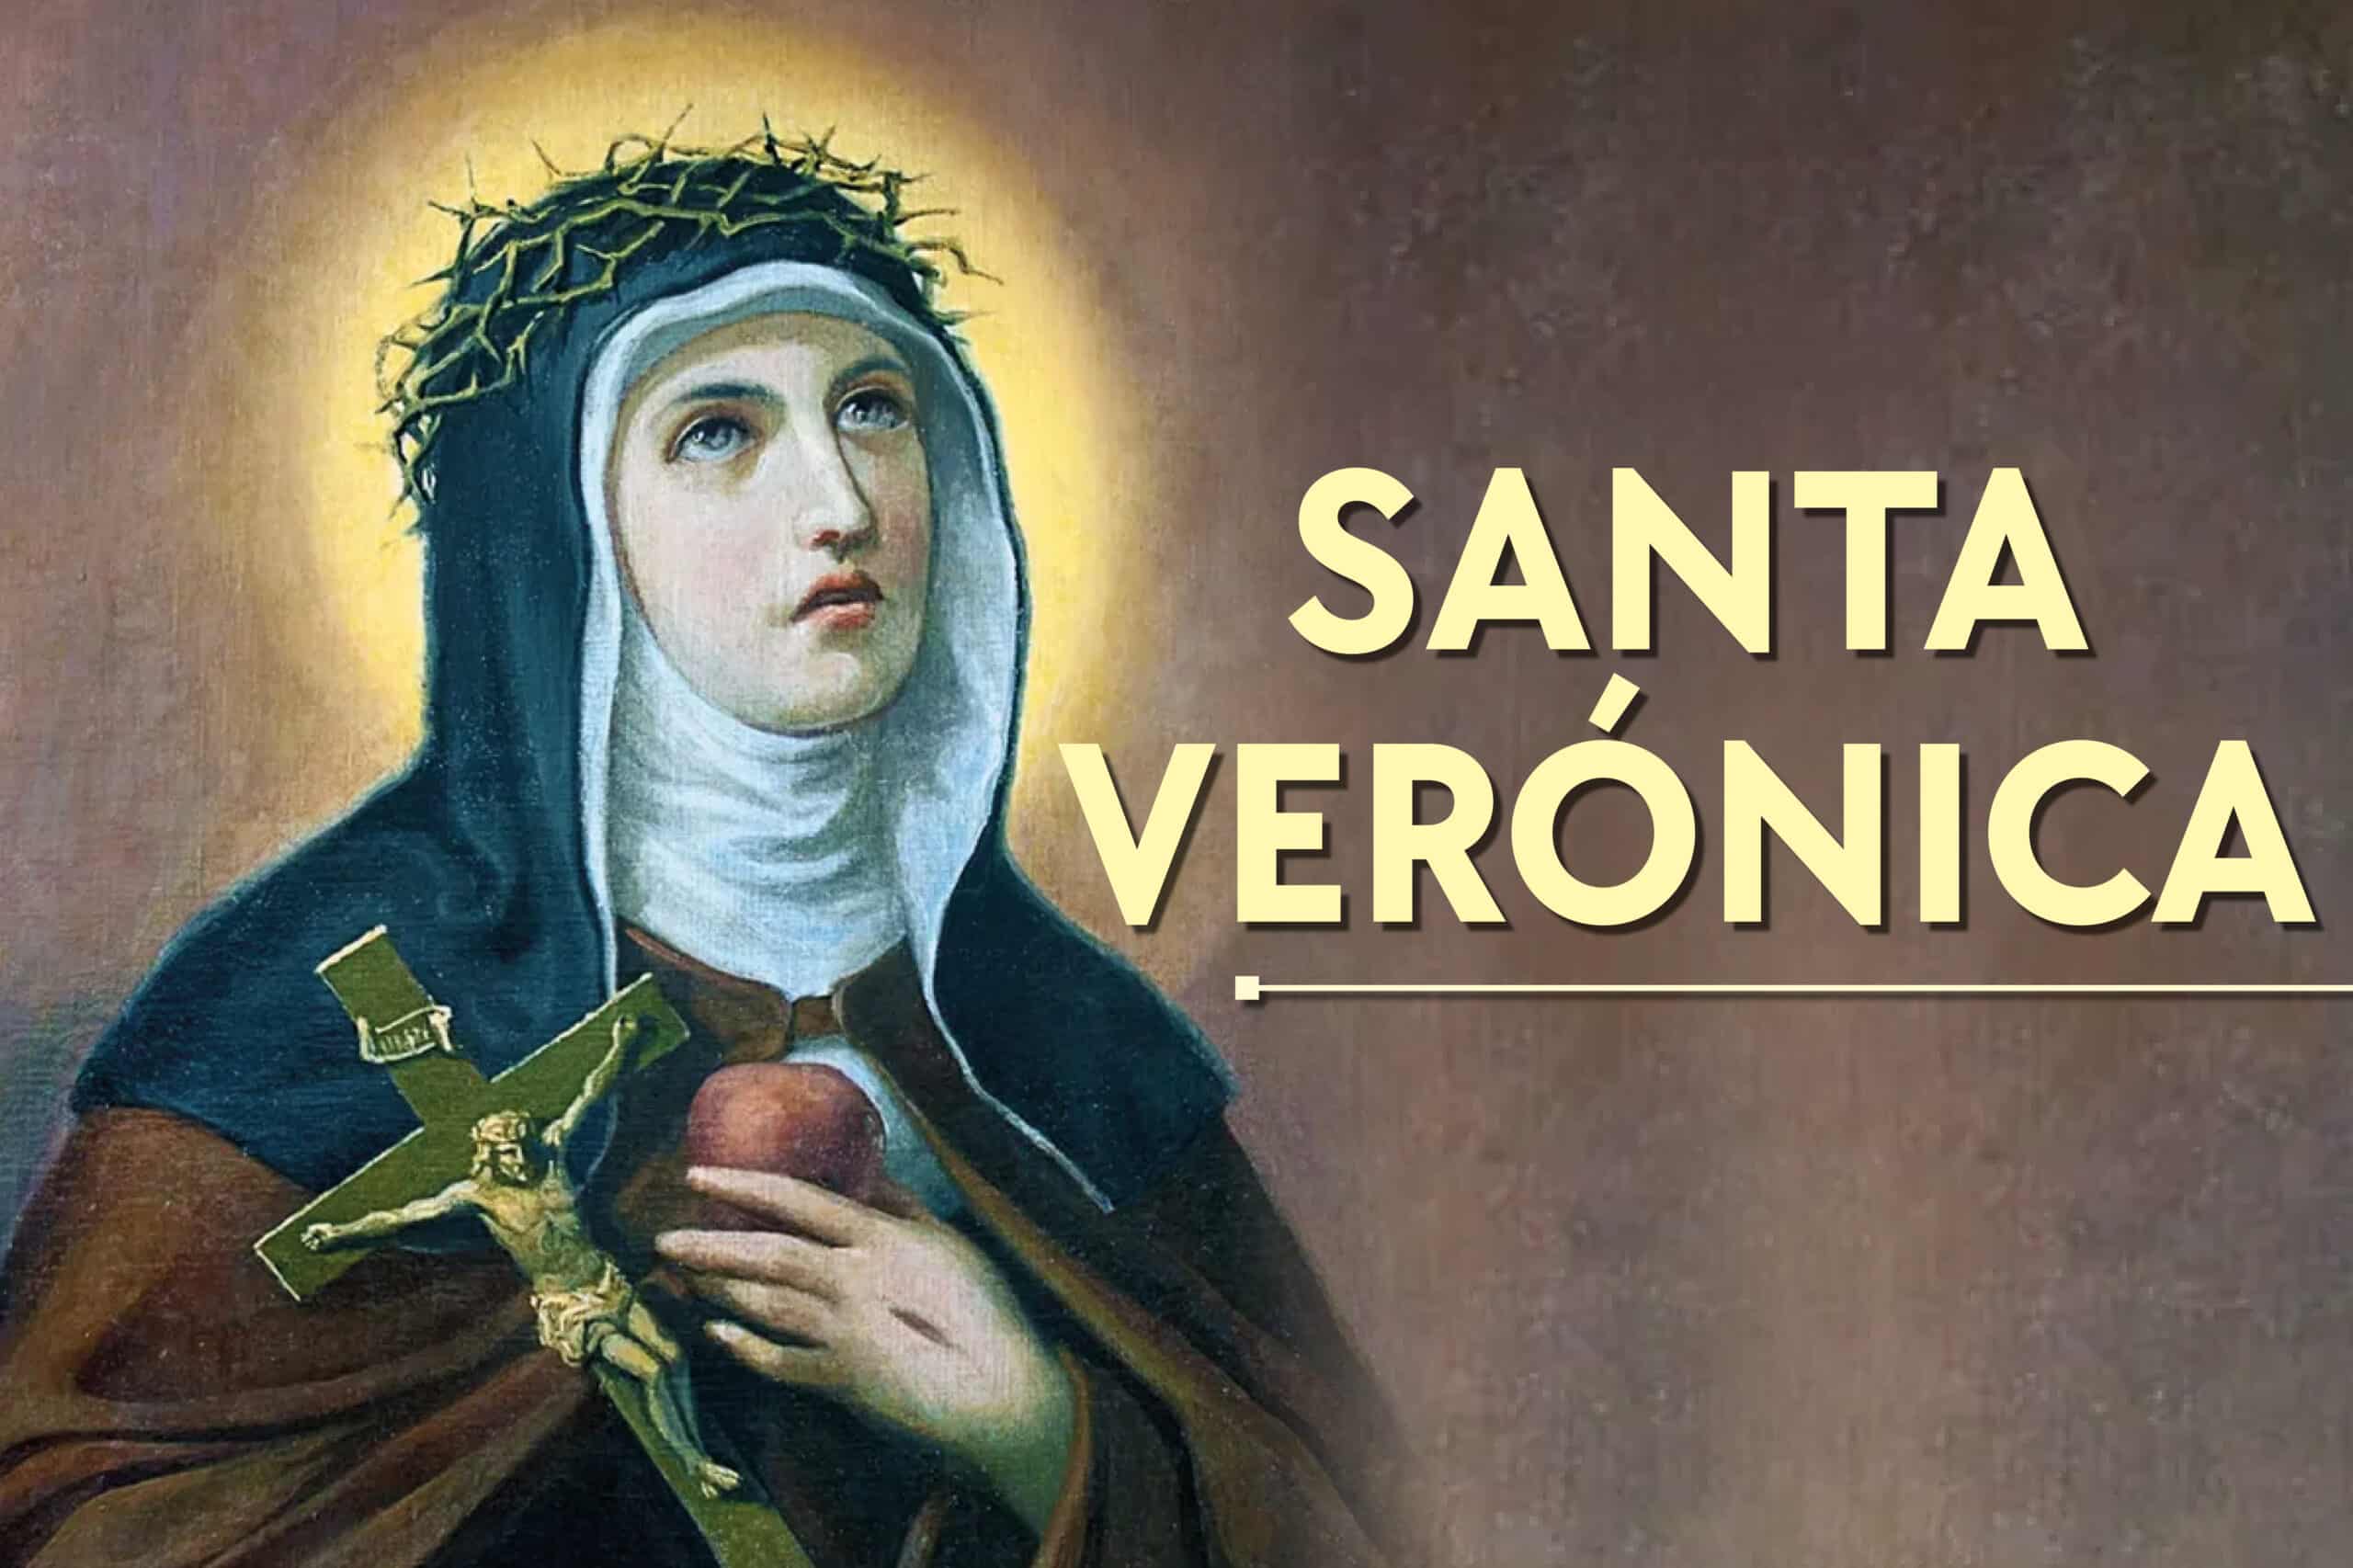 12 de julio: Se celebra a Santa Verónica, la mujer que limpió el rostro de Jesús